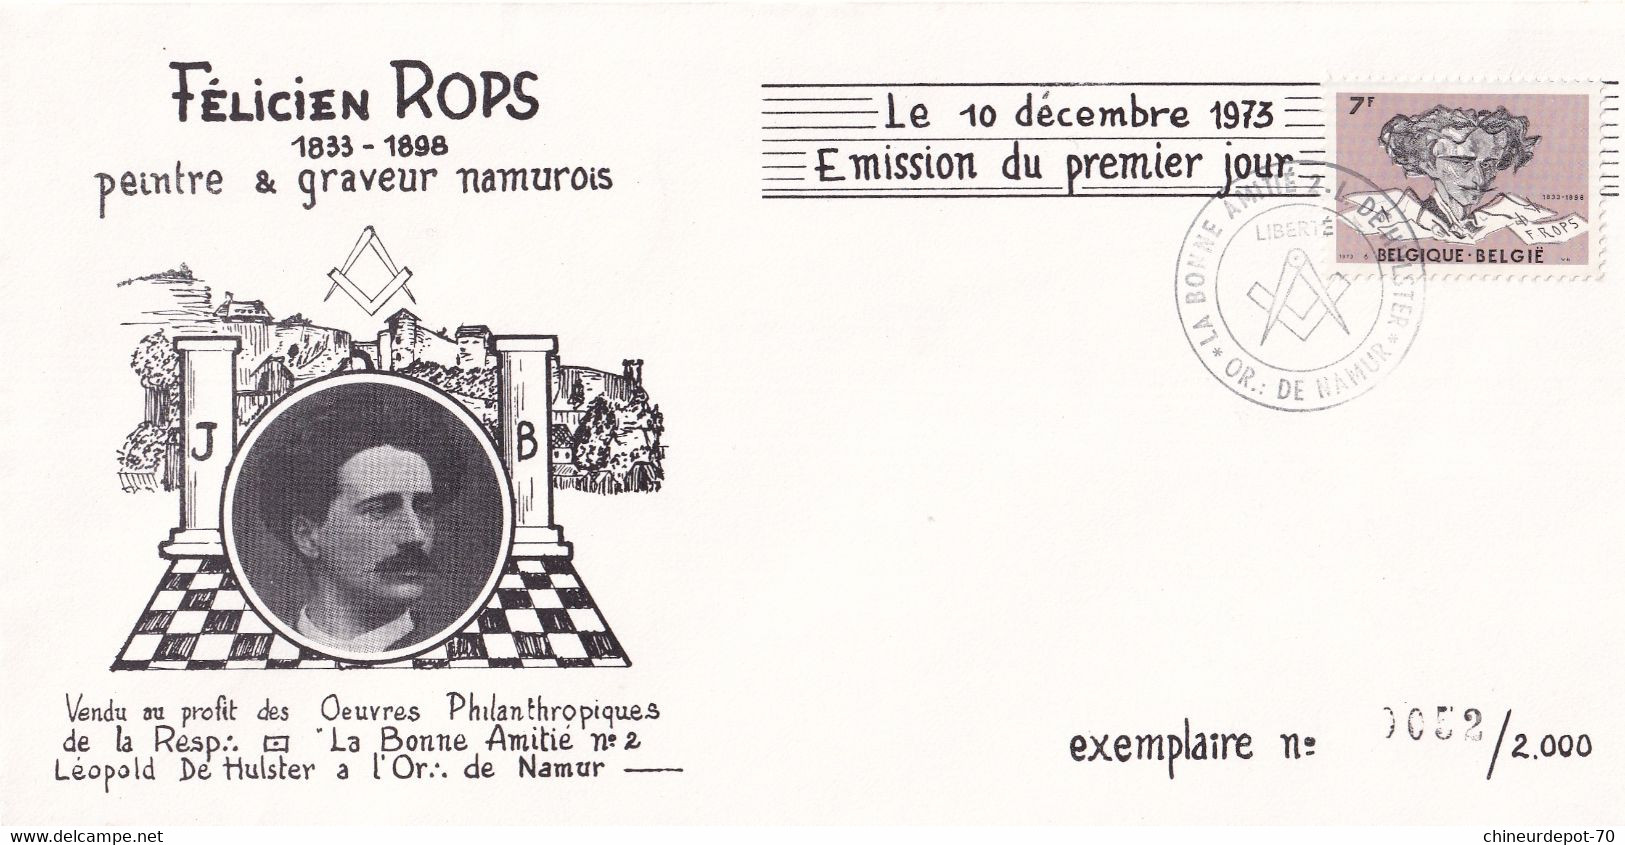 Félicien Rops Peintre & Graveur Namurois 1973 Namur Exemplaire Rare 0052 / 2000 - Briefe